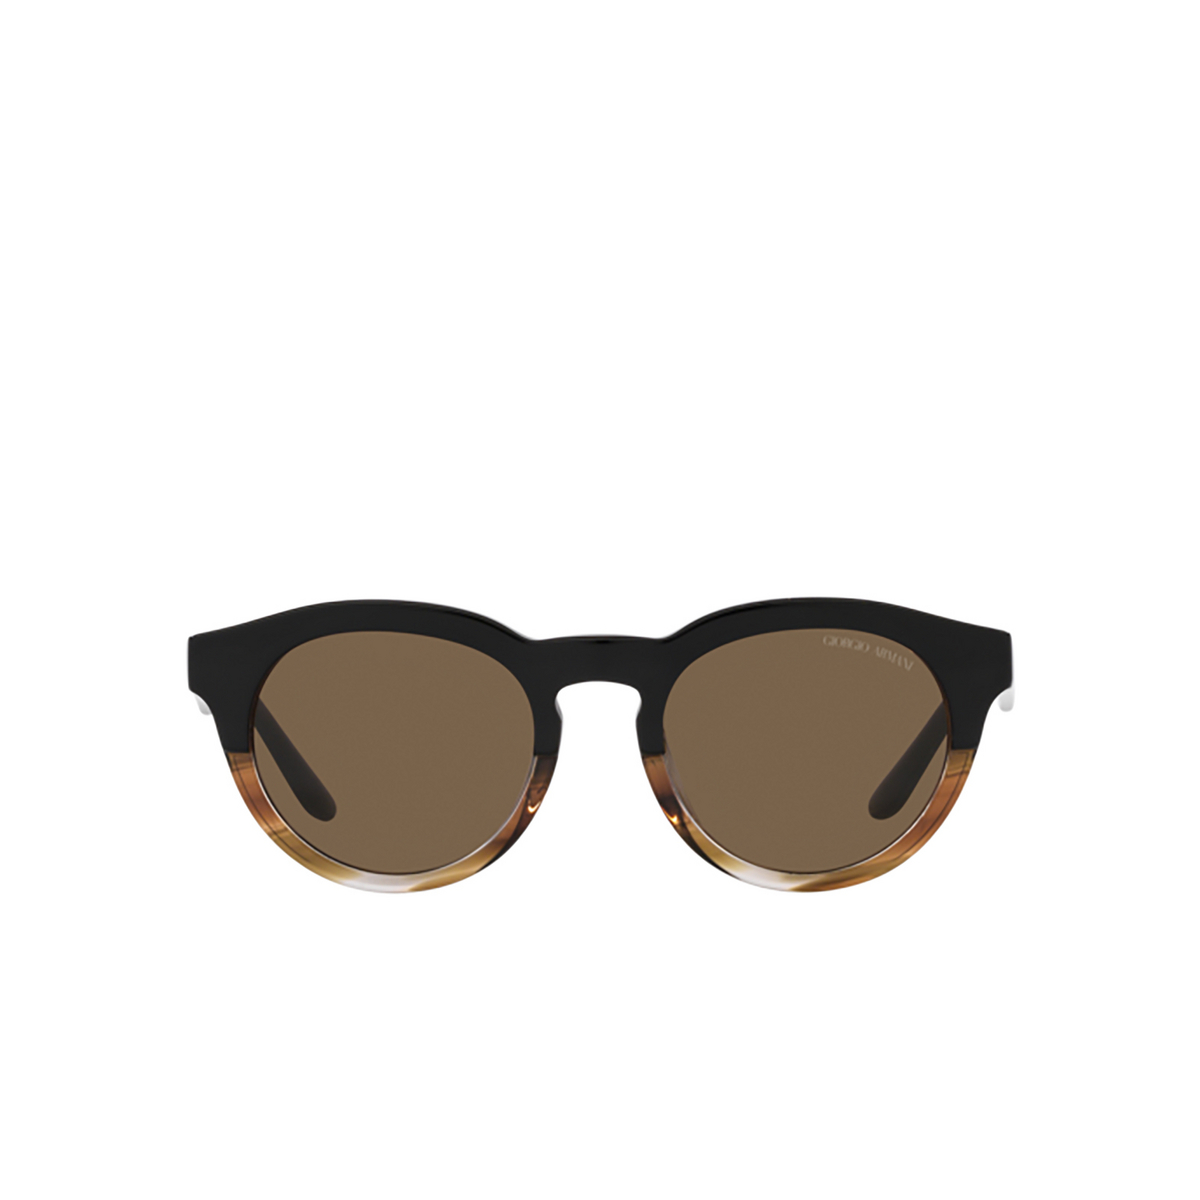 Giorgio Armani AR8189U Sunglasses 600673 Black/striped brown - front view